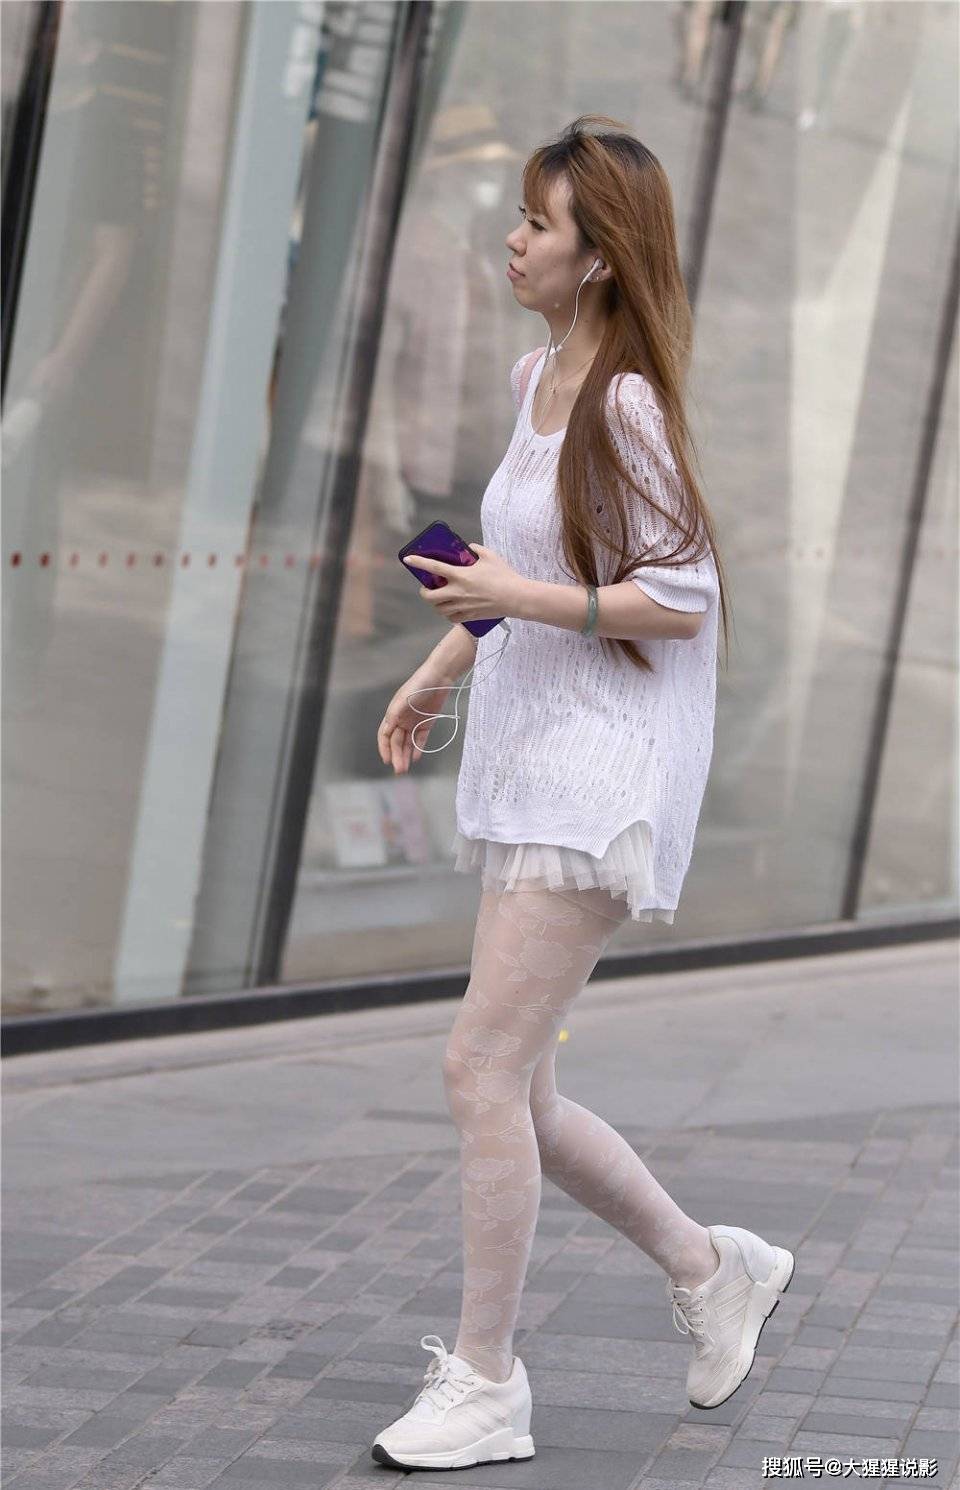 原创街拍:小姐姐一身白,白色短褶皱 丝袜搭配小白鞋,隐约的个性美